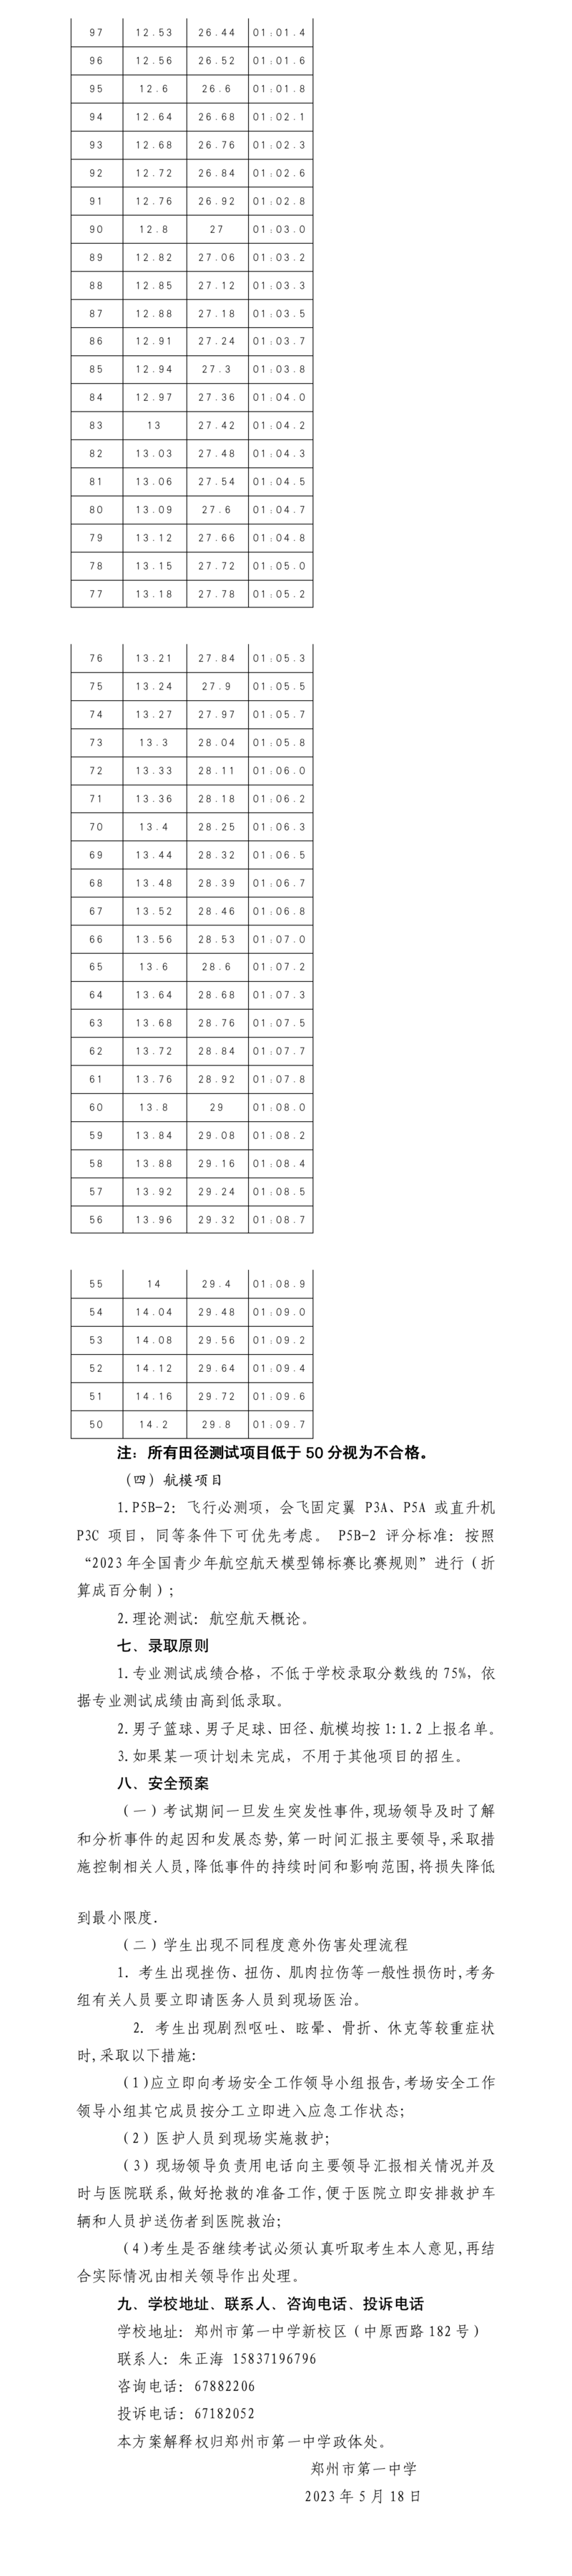 郑州市第一中学体育后备生招生方案（官方）(1)_02